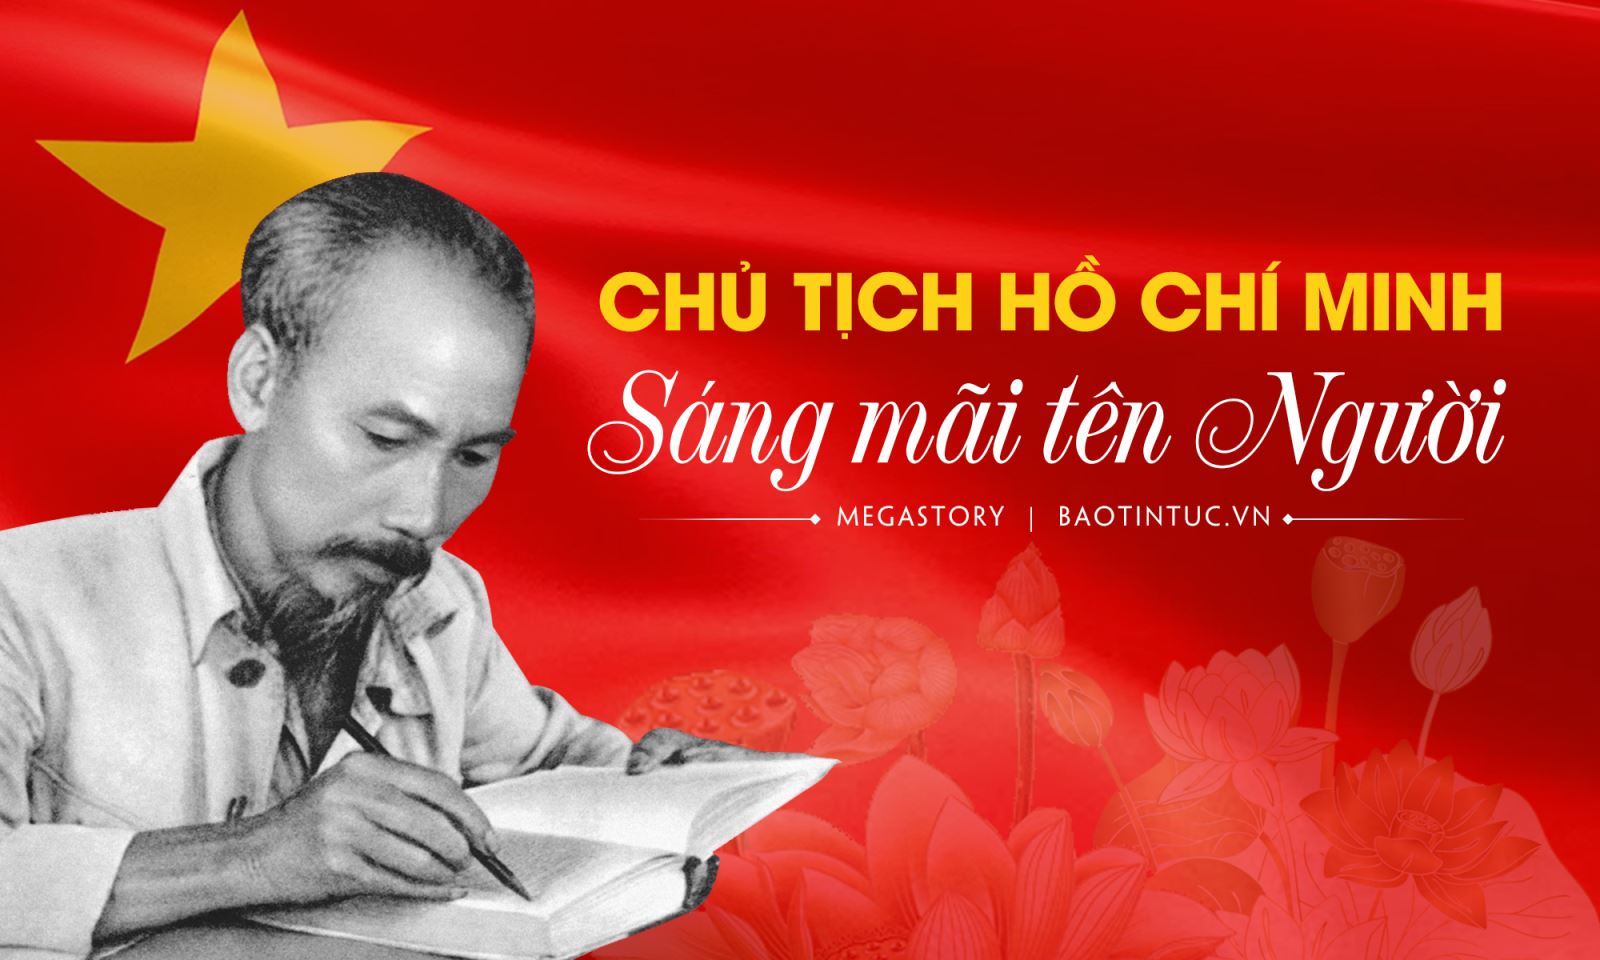 Chủ tịch Hồ Chí Minh, Người thầy vĩ đại của cách mạng Việt Nam, Anh hùng giải phóng dân tộc, Danh nhân văn hóa kiệt xuất